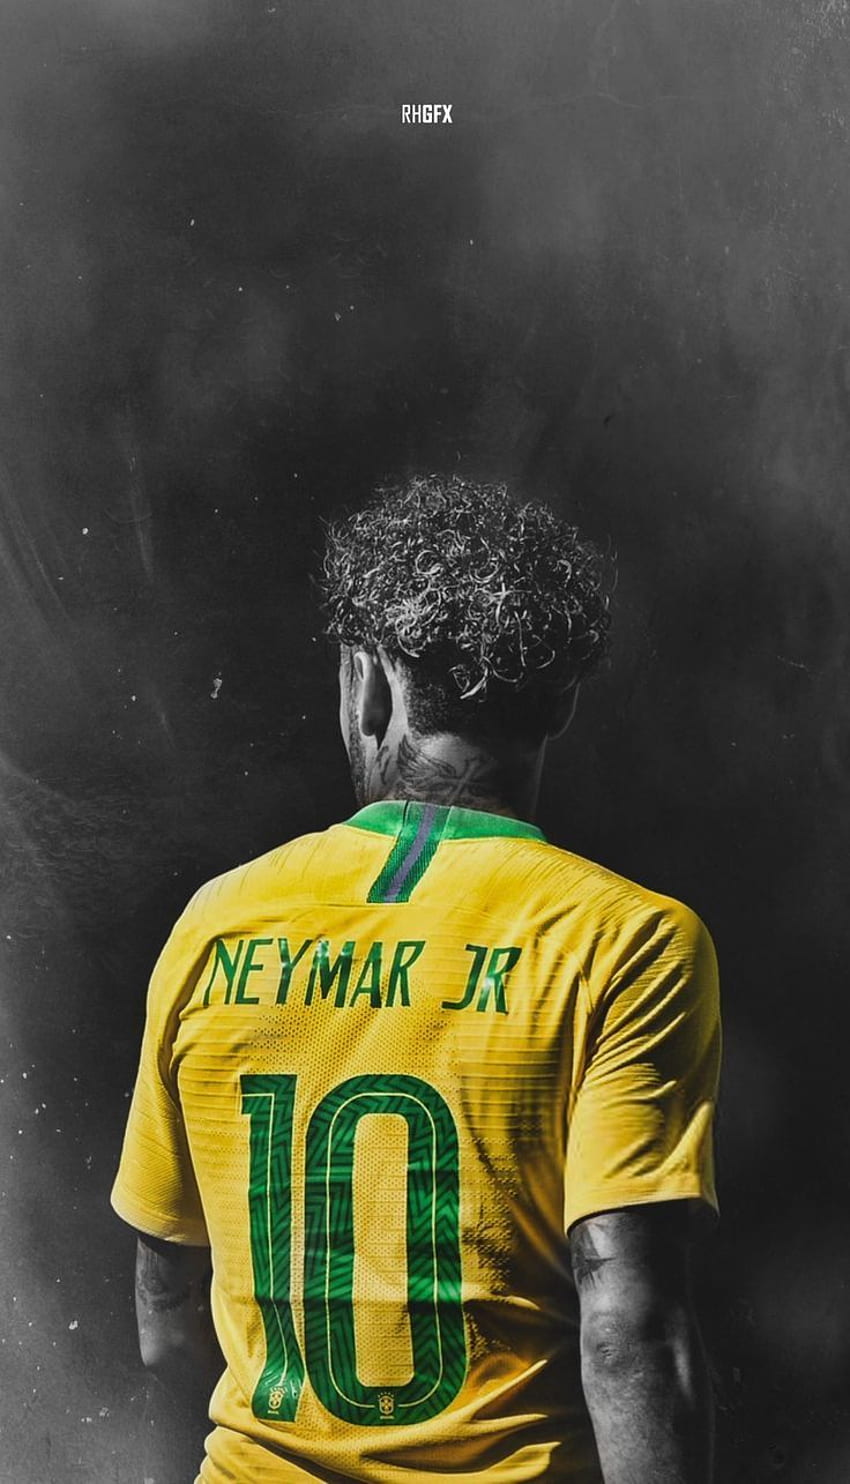 Hãy tải ngay hình nền điện thoại của Neymar Jr để thể hiện sự yêu thích với cầu thủ đẳng cấp này. Hình ảnh của Neymar sẽ giúp cho điện thoại của bạn trở nên đặc biệt và thú vị hơn.